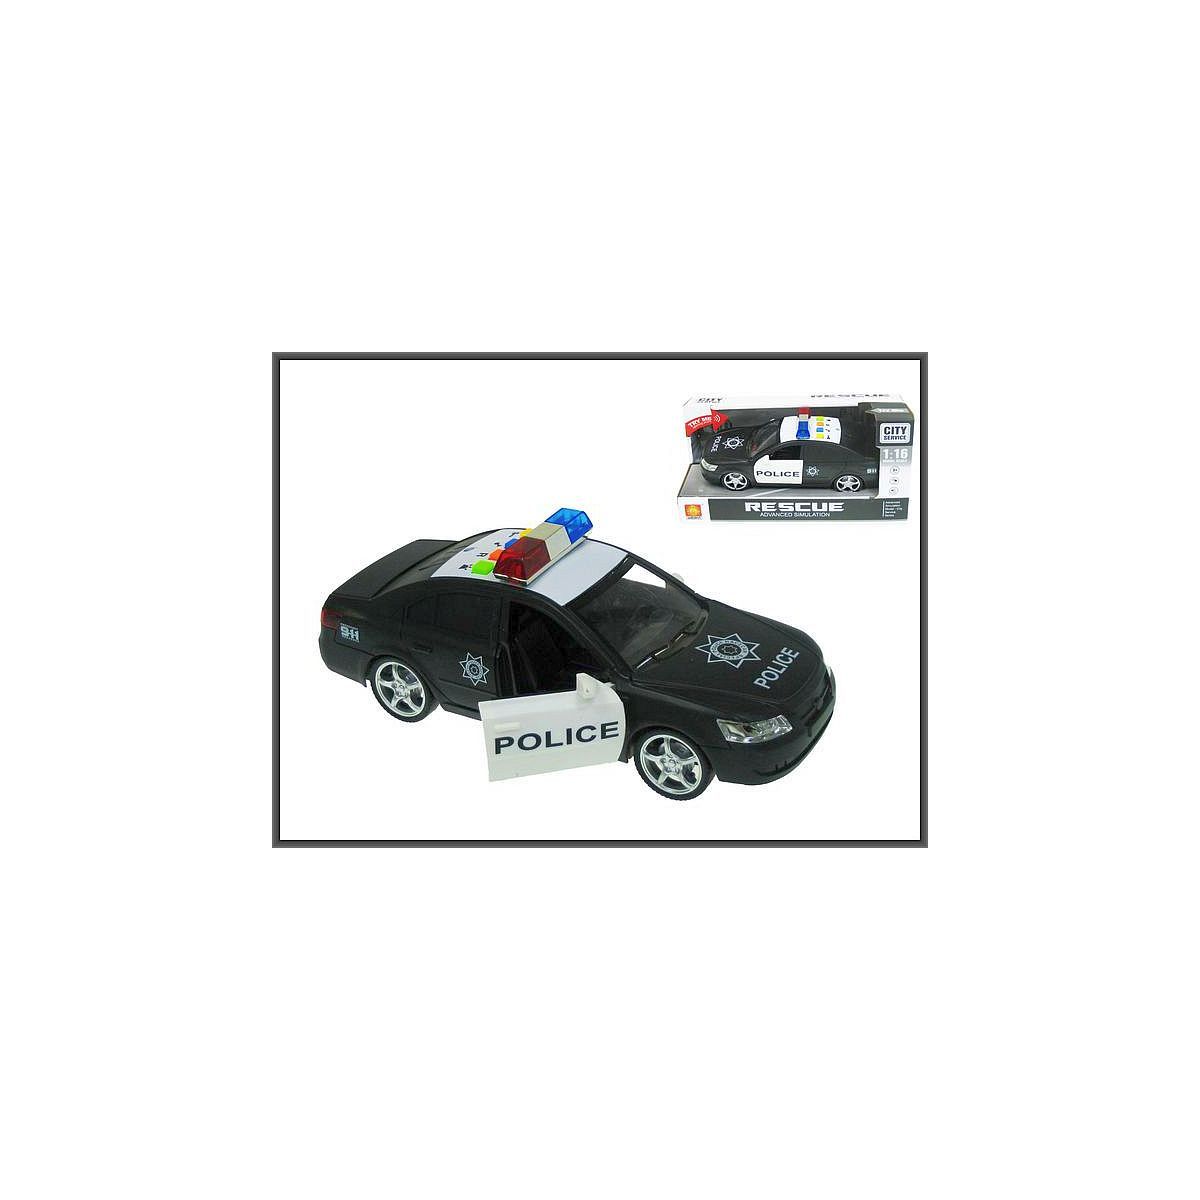 Samochód  policyjny światłem i dźwiękiem w skali 1:16 (24cm) Hipo (H12327)